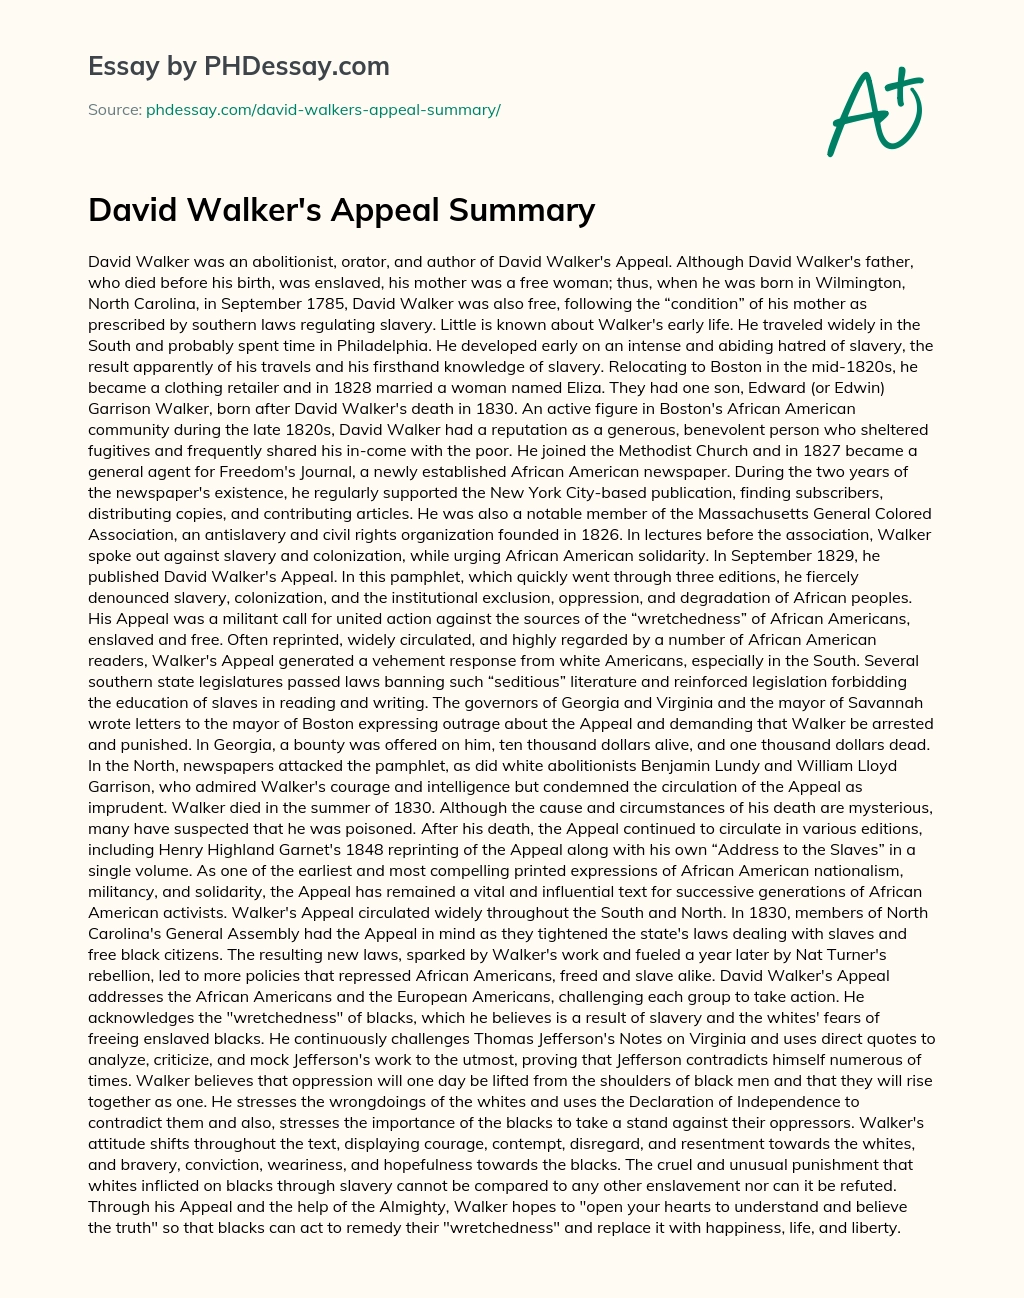 David Walker’s Appeal Summary essay